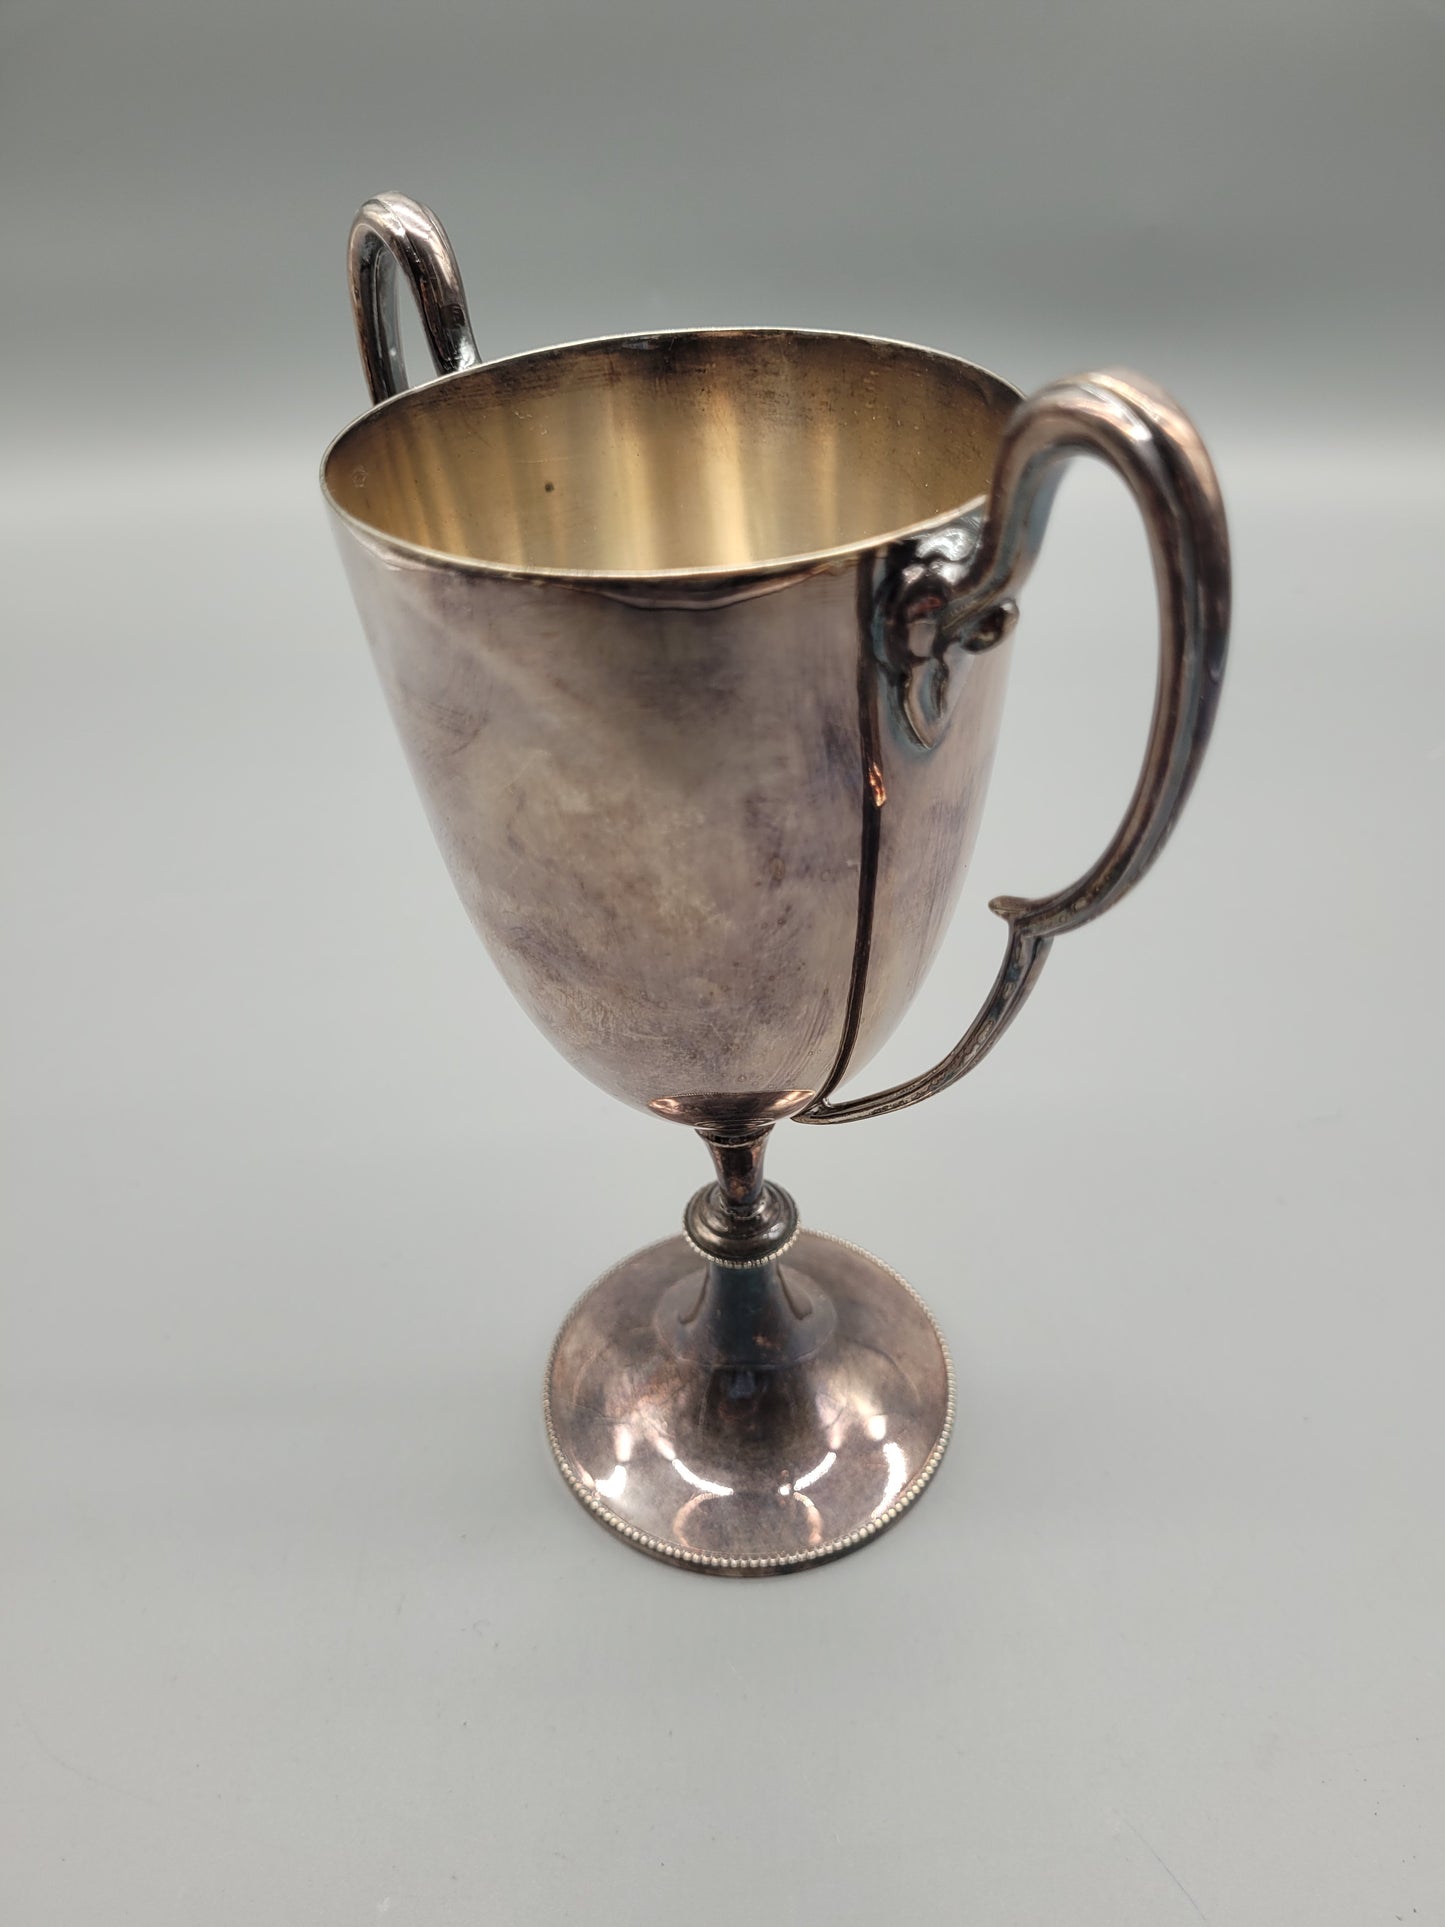 Meistermarke Mappin & Webb, London Sheffield Art Deco Silber Pokal, Kelch